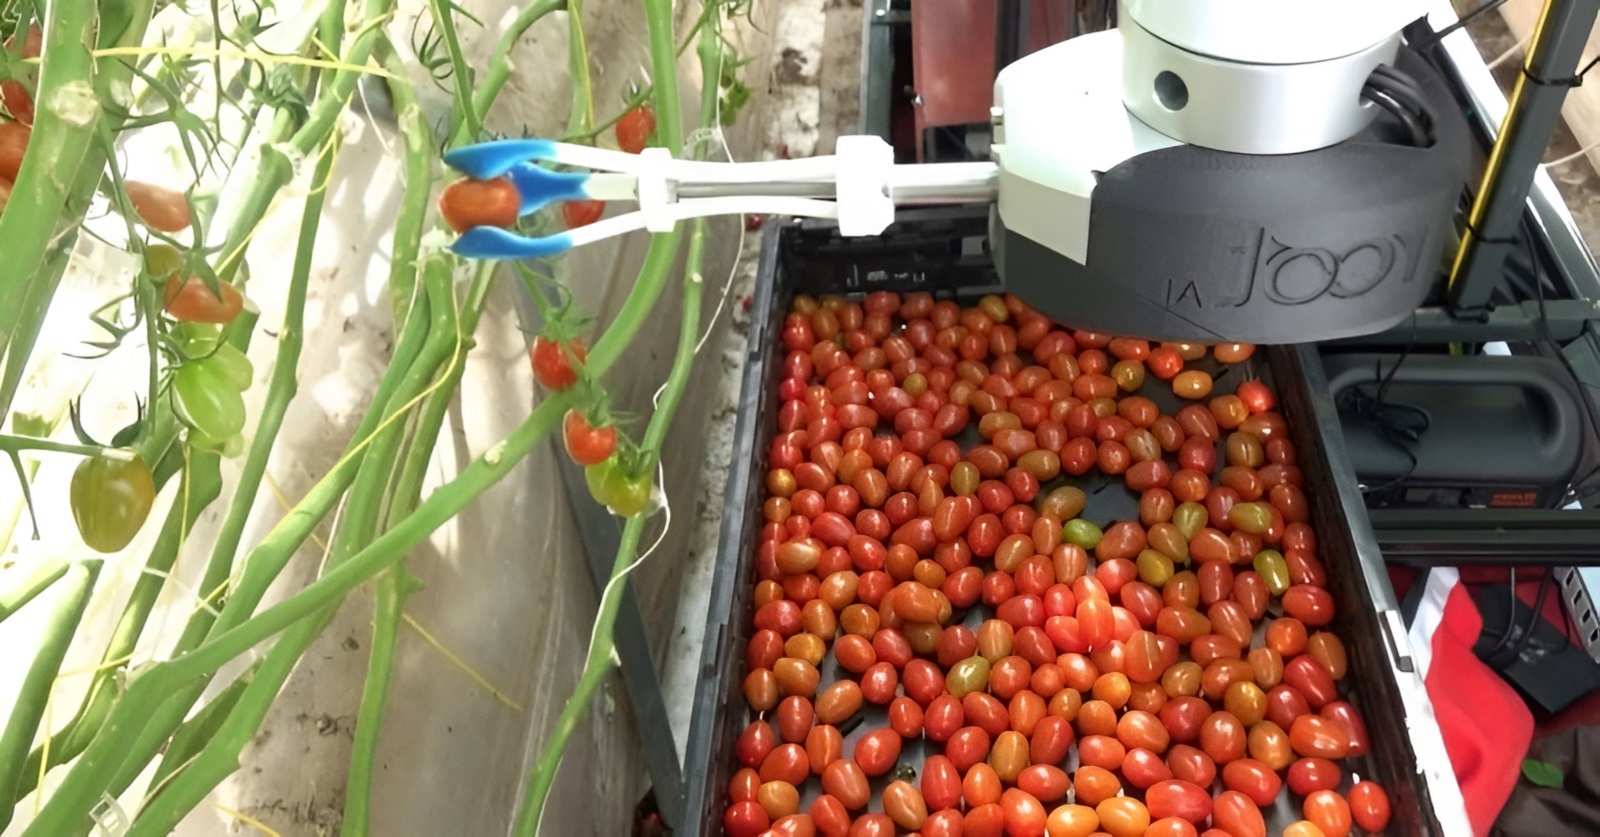 Robot thu hoạch trái cây Virgo 1